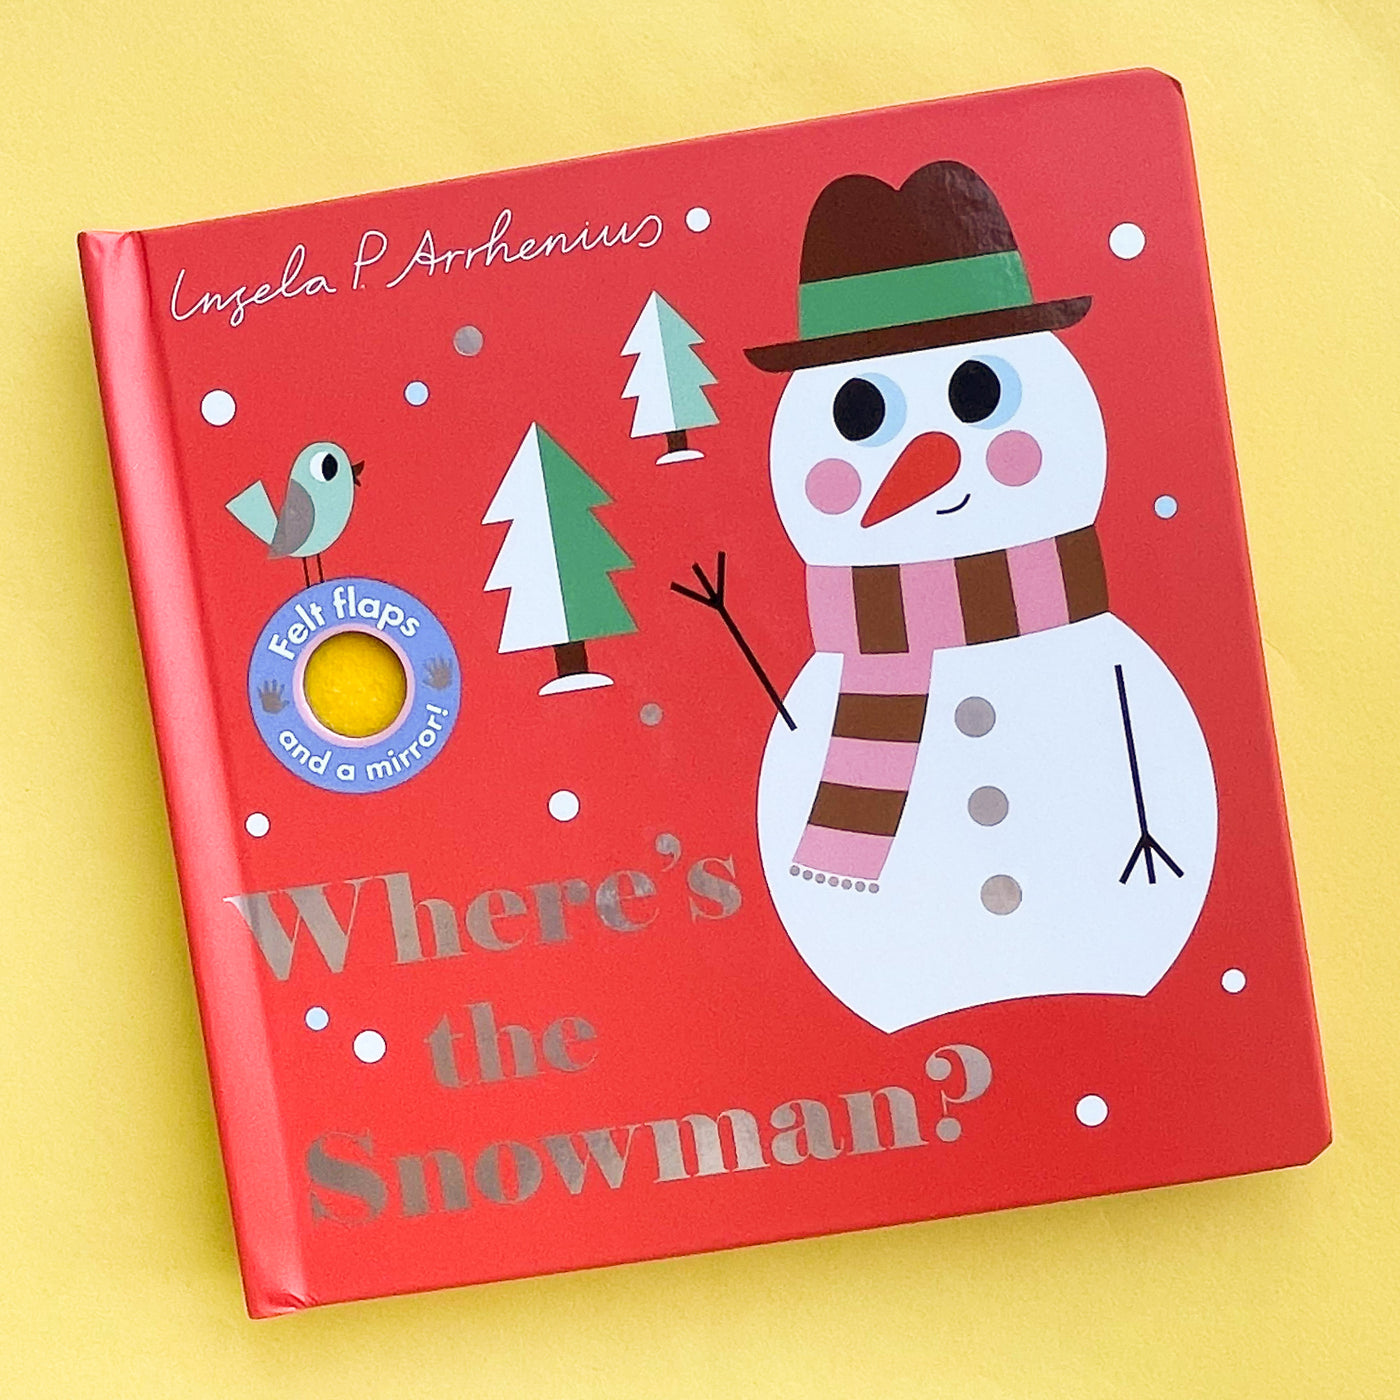 Where's the Snowman? by Ingela P Arrhenius